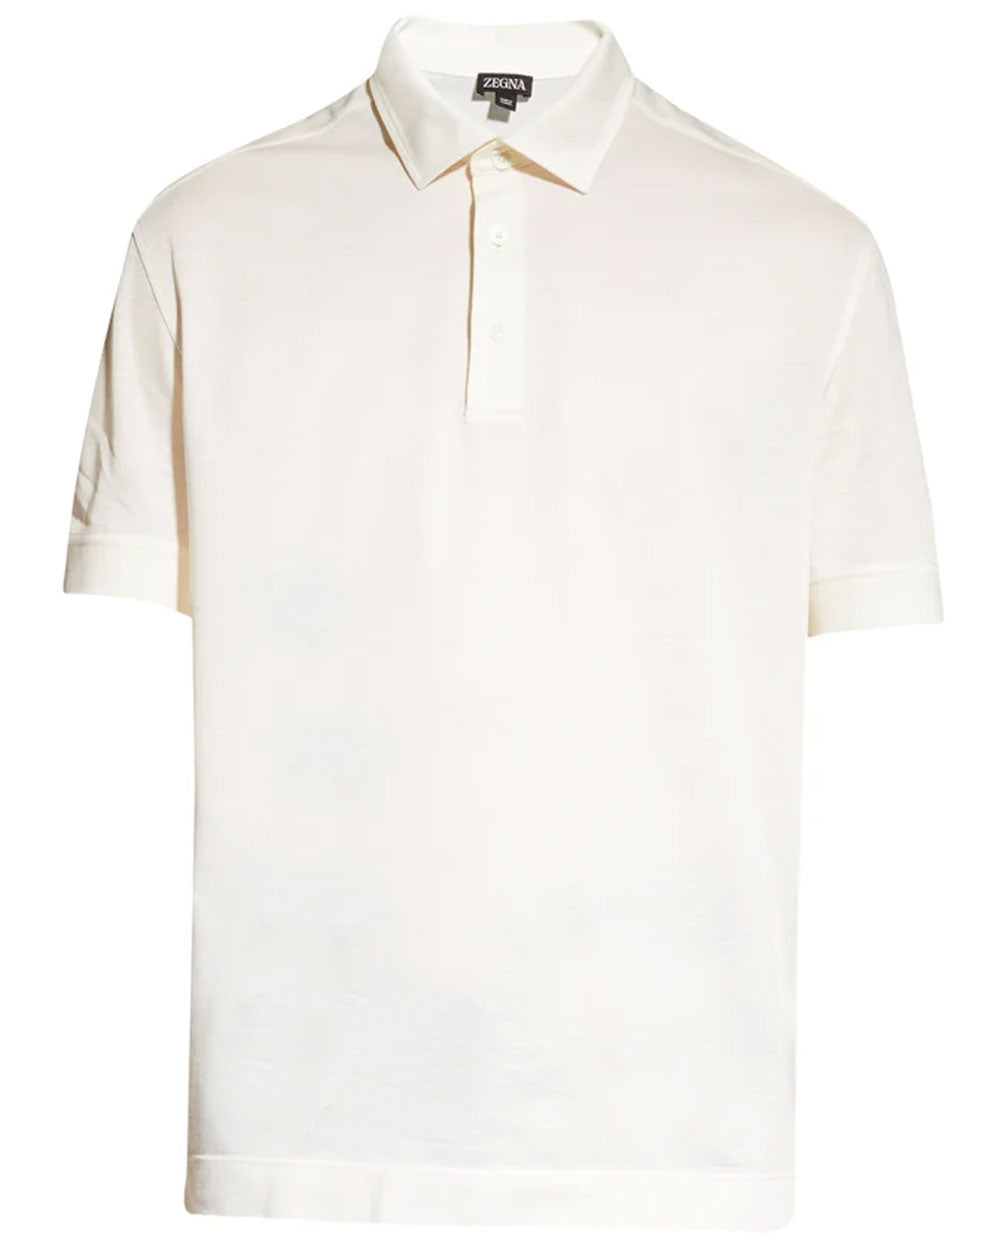 Off White Micro Pique Polo Shirt